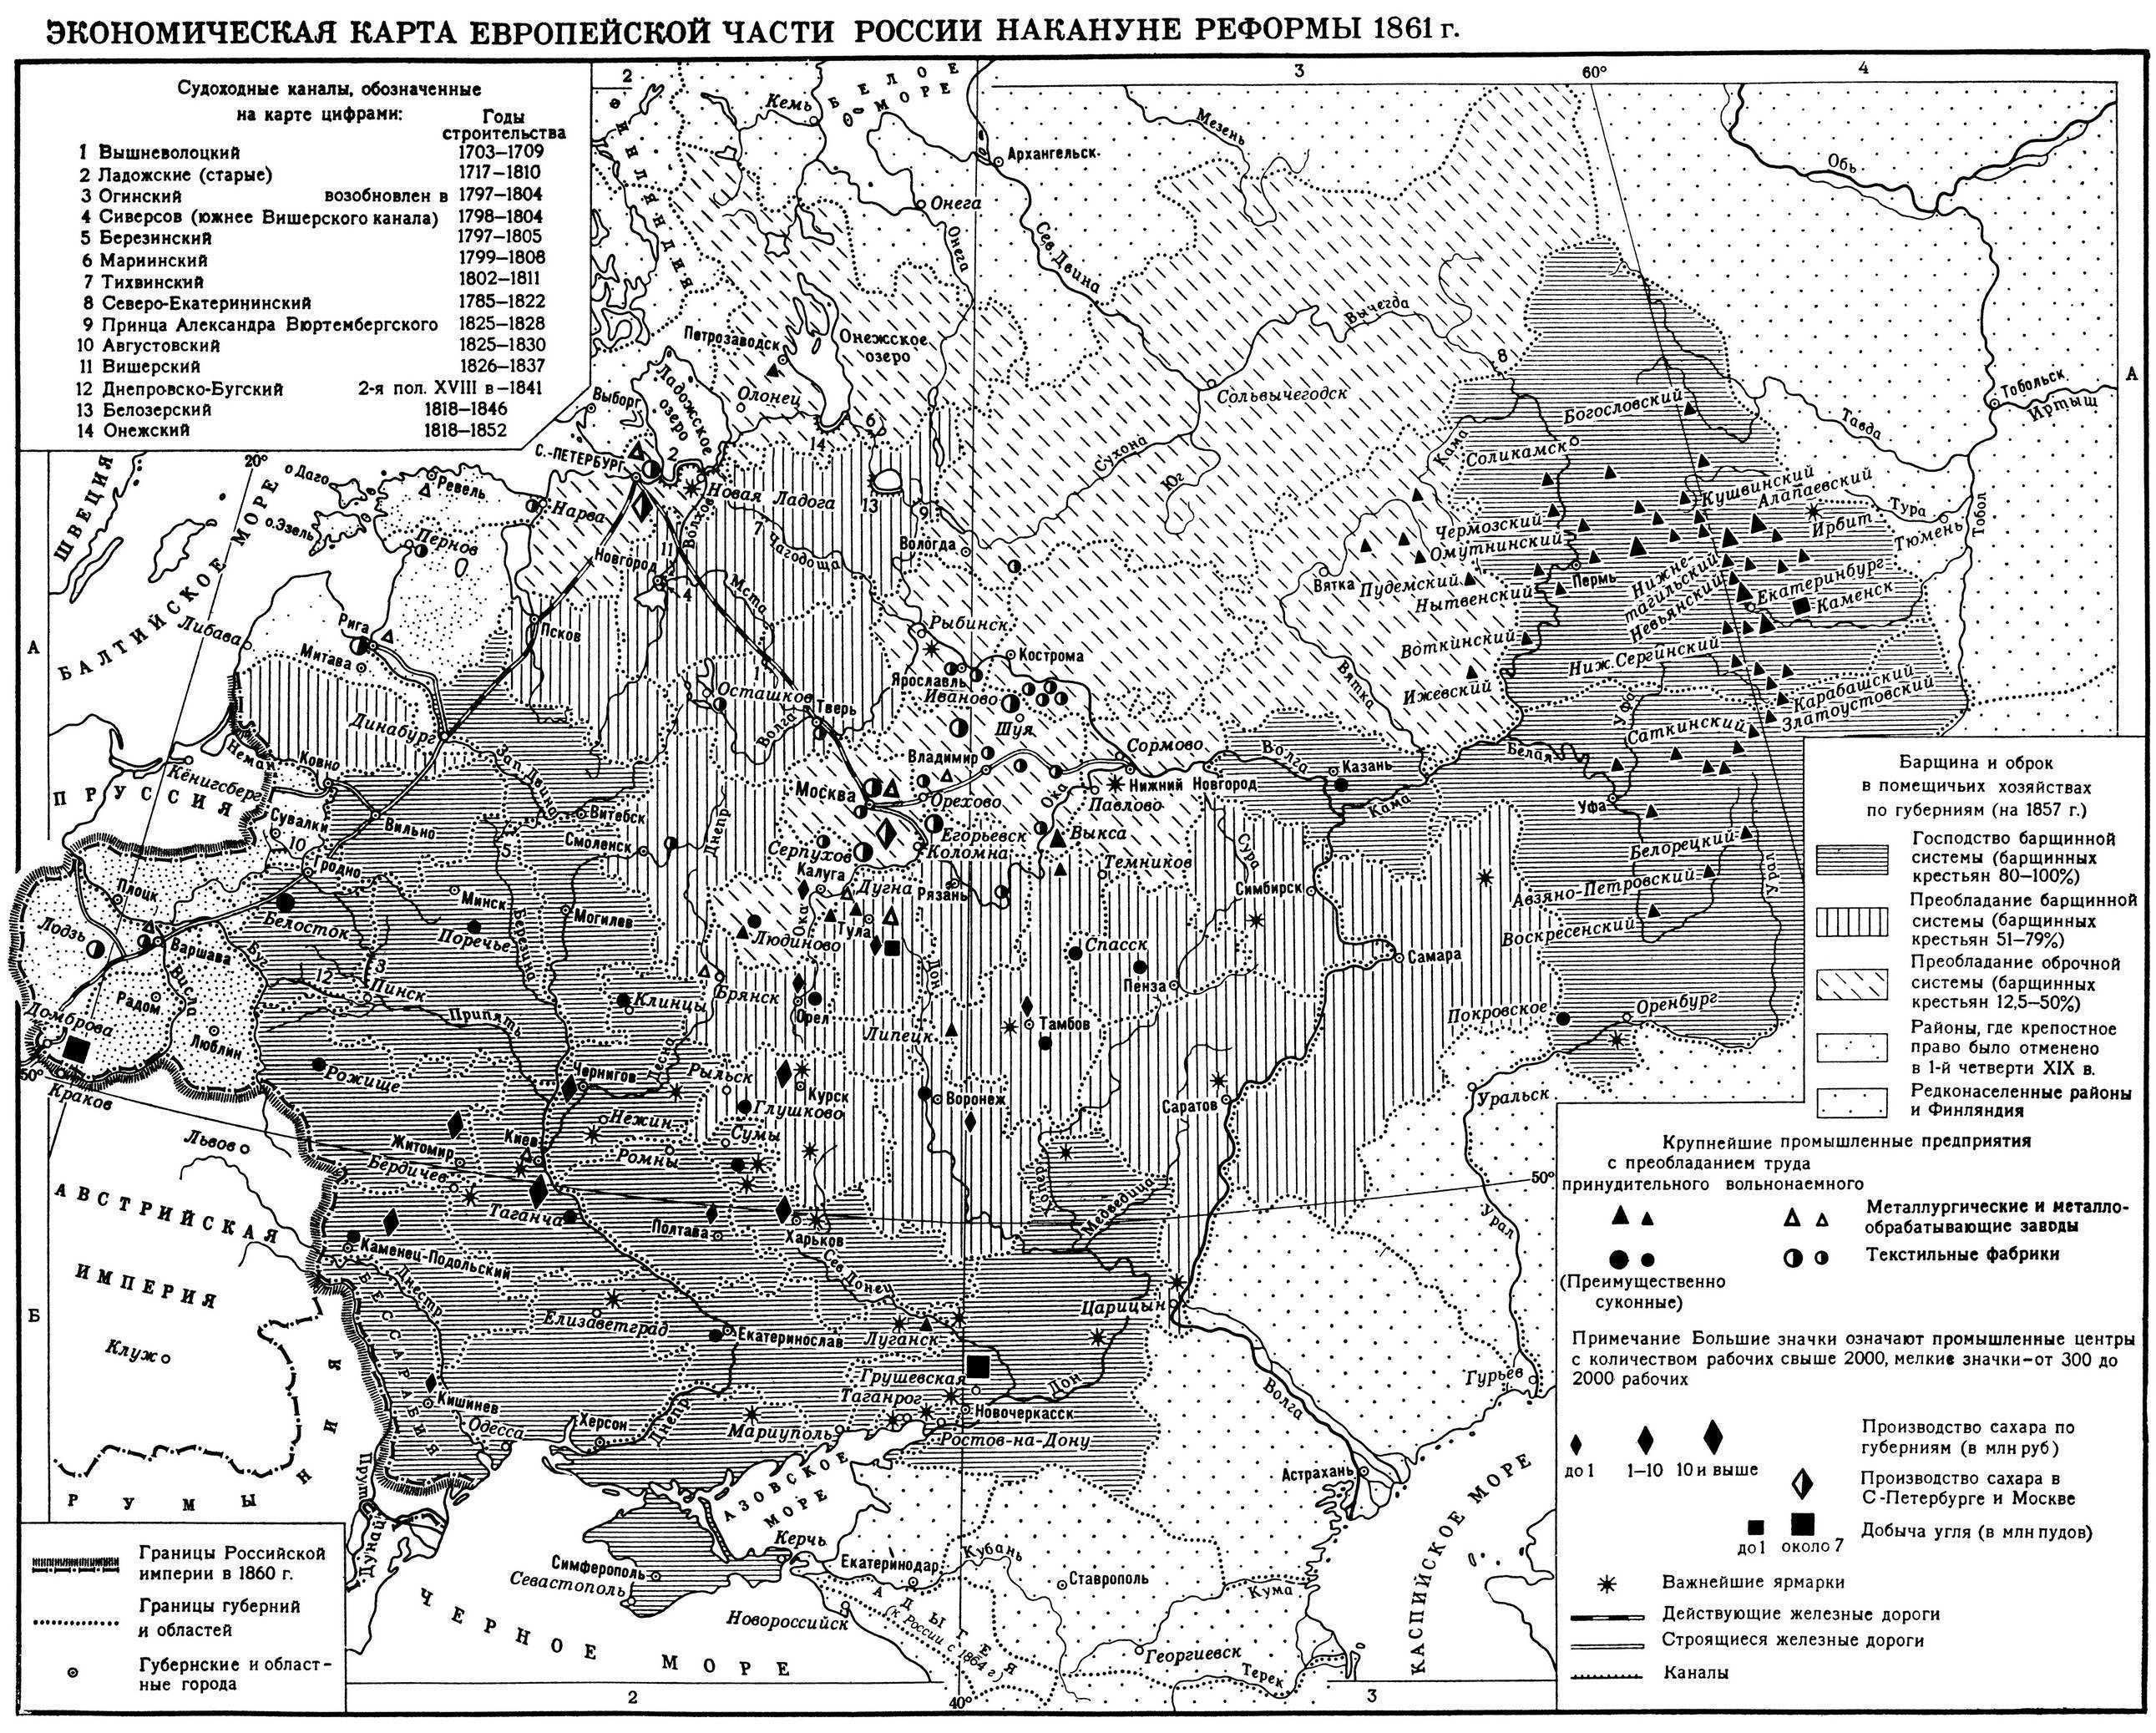 Европейская часть россии экономика. Карта крепостничества в России 19 век. Экономическая карта России во второй половине 19 века.